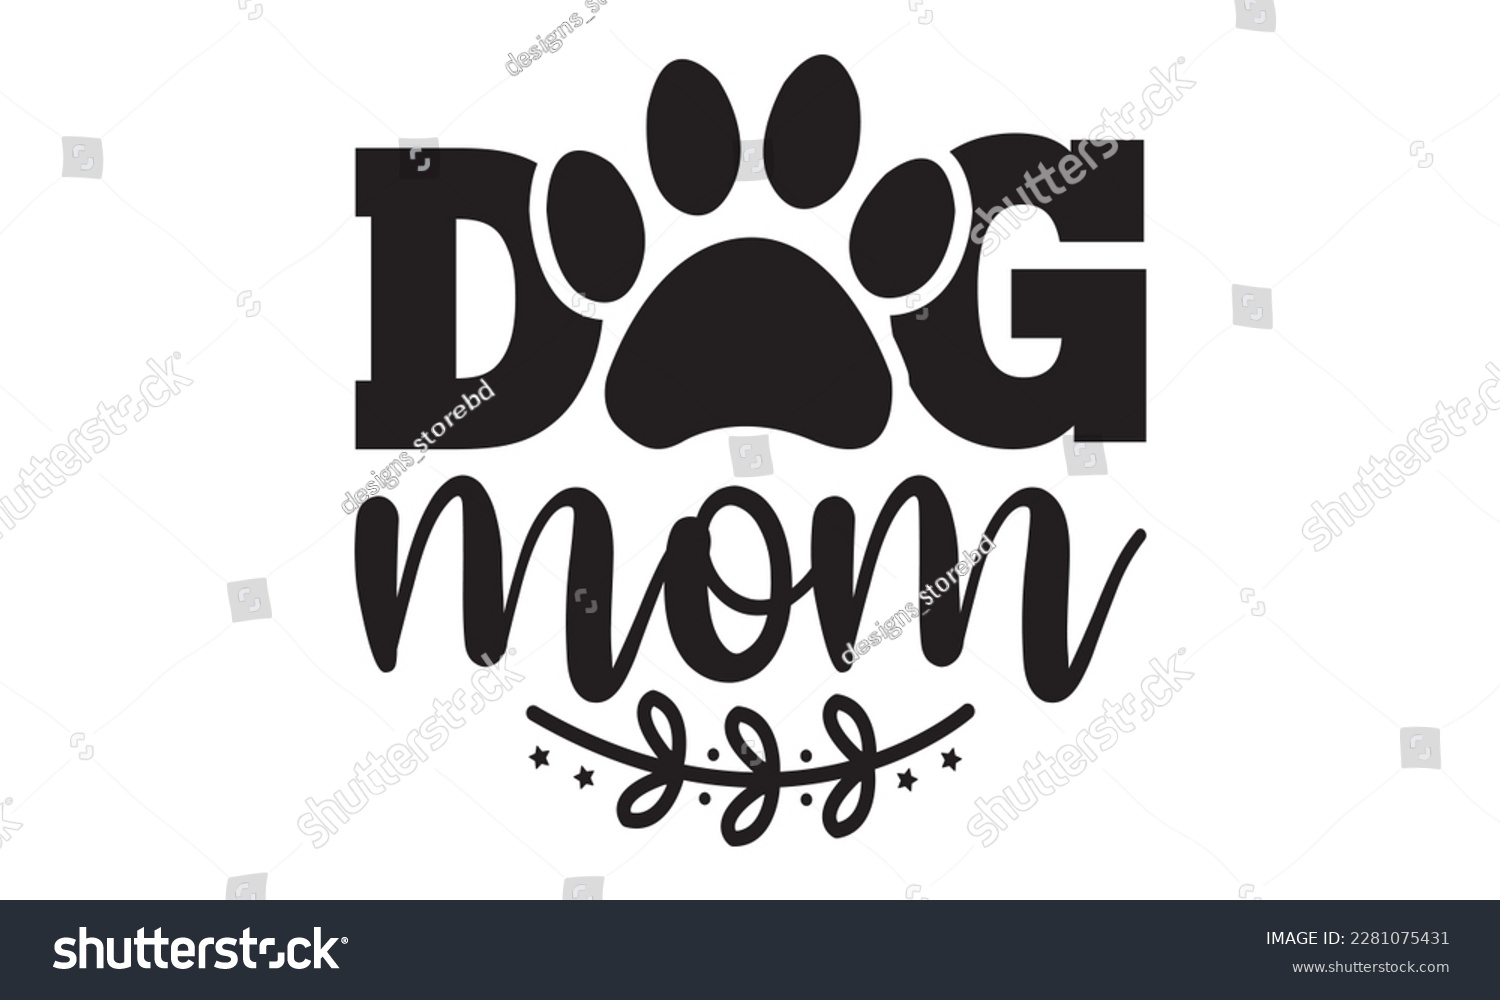 SVG of Dog mom svg ,dog SVG Bundle, dog SVG design bundle and  t-shirt design, Funny Dog Quotes SVG Designs and cut files, fur mom, animal design, animal lover svg